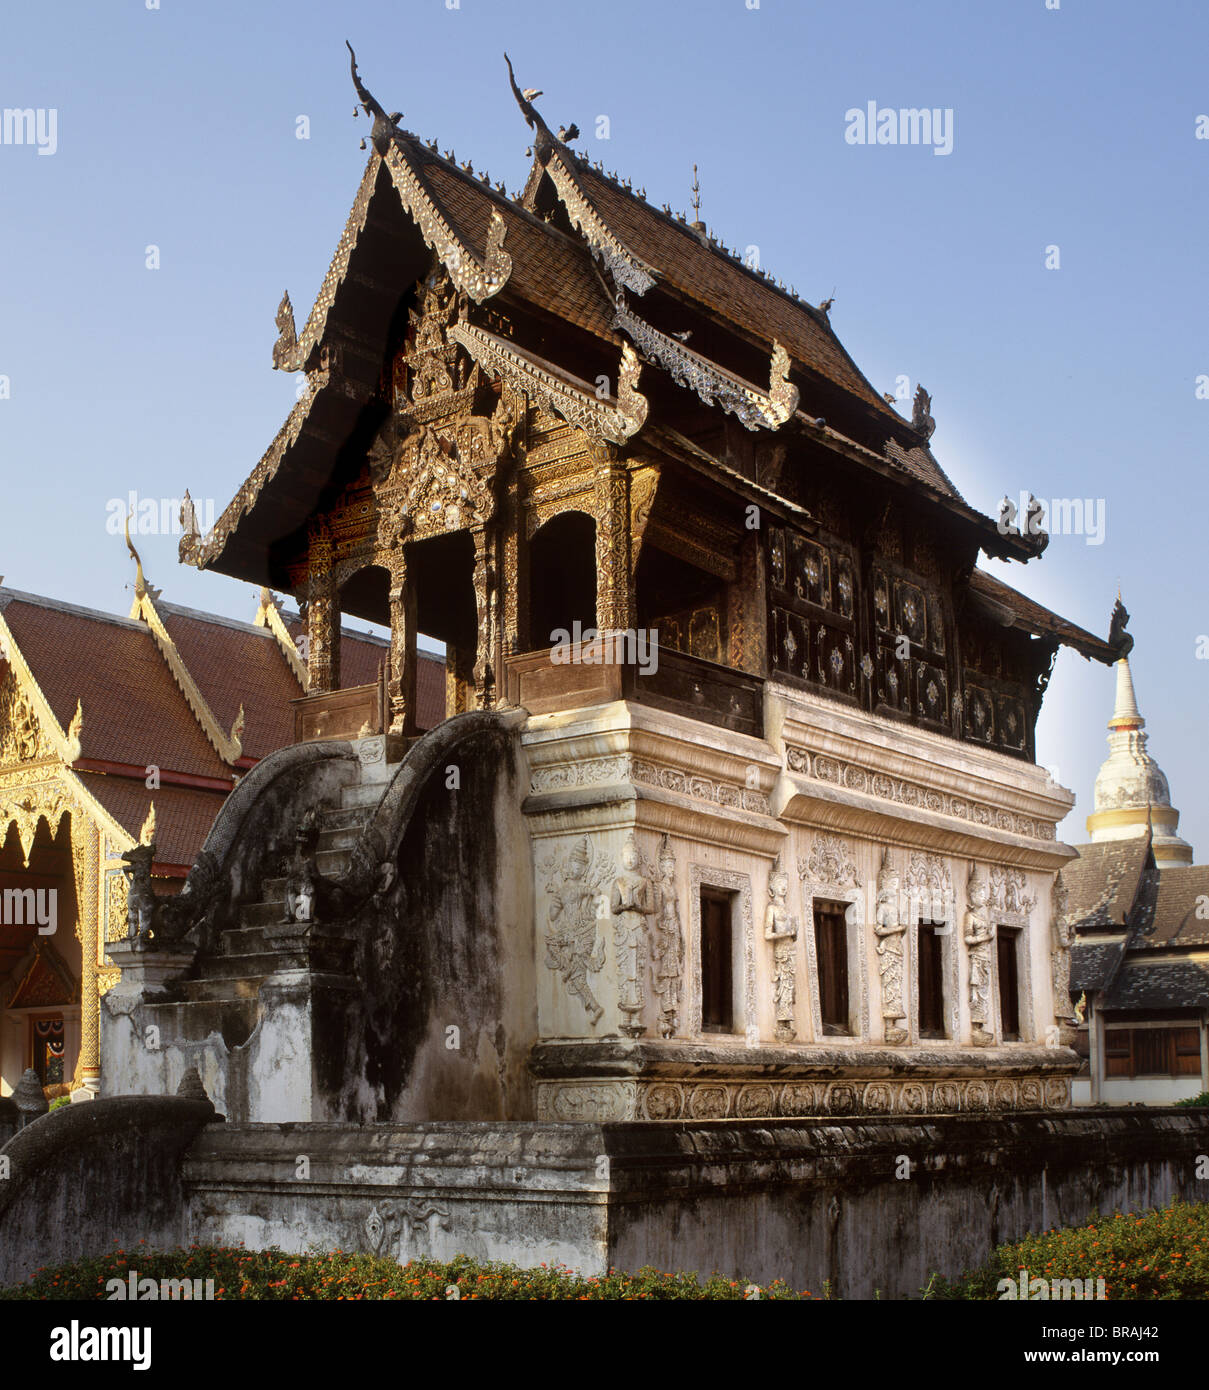 Le manuscrit de la bibliothèque de Wat Phra Singh, Chiang Mai, Thaïlande, Asie du Sud-Est, Asie Banque D'Images